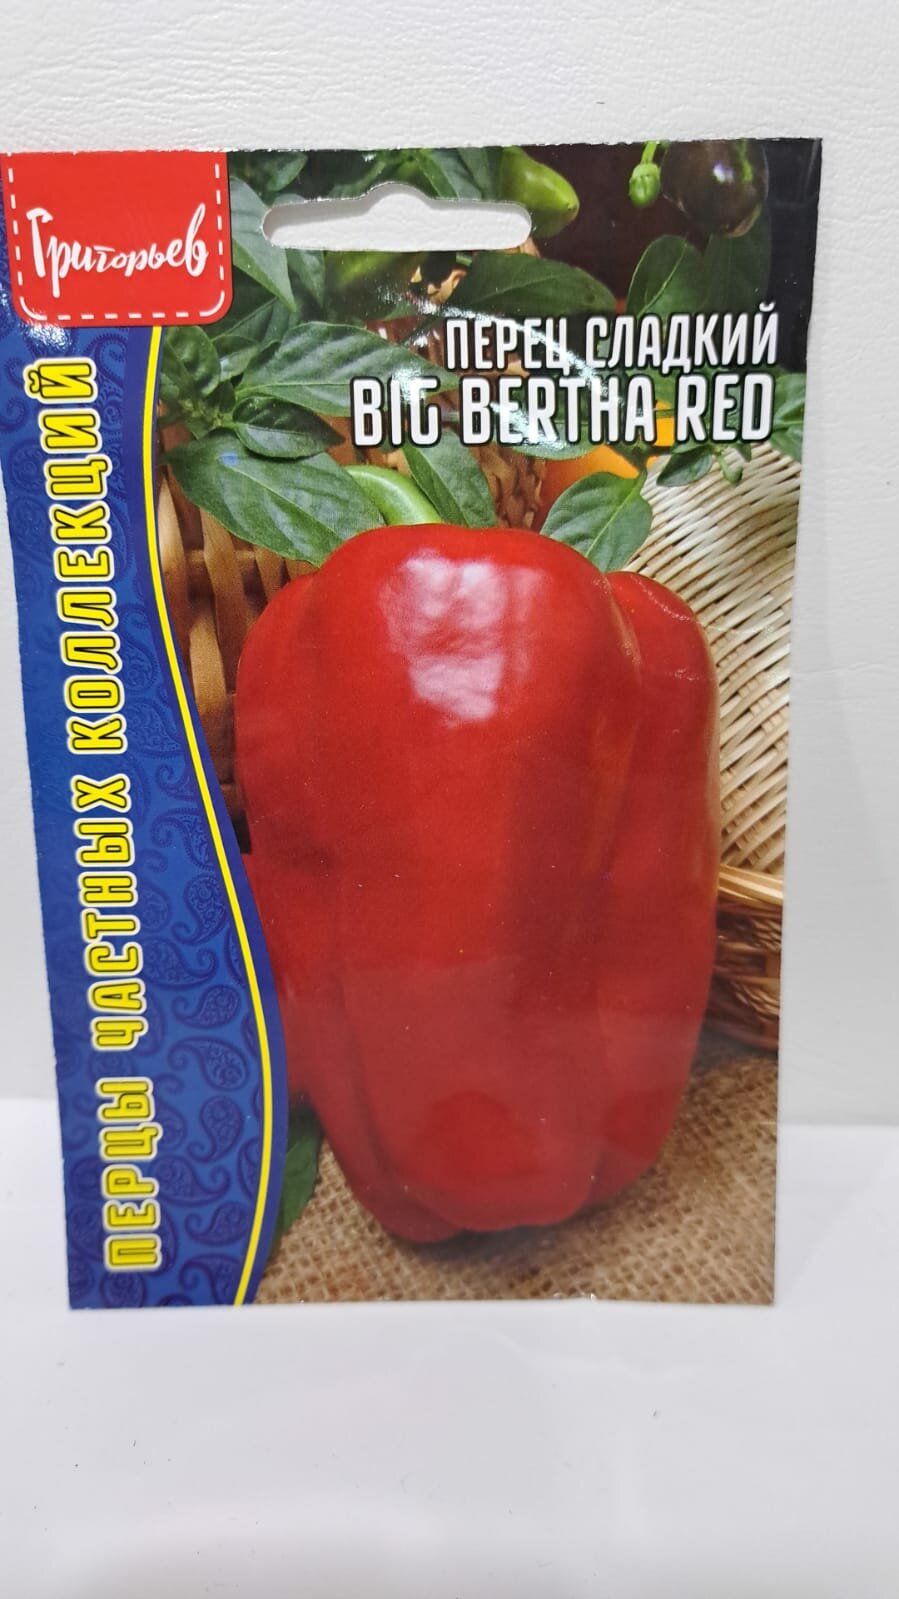 Перец сладкий Big Bertha Red 5 шт редкие семен (2шт в заказе)